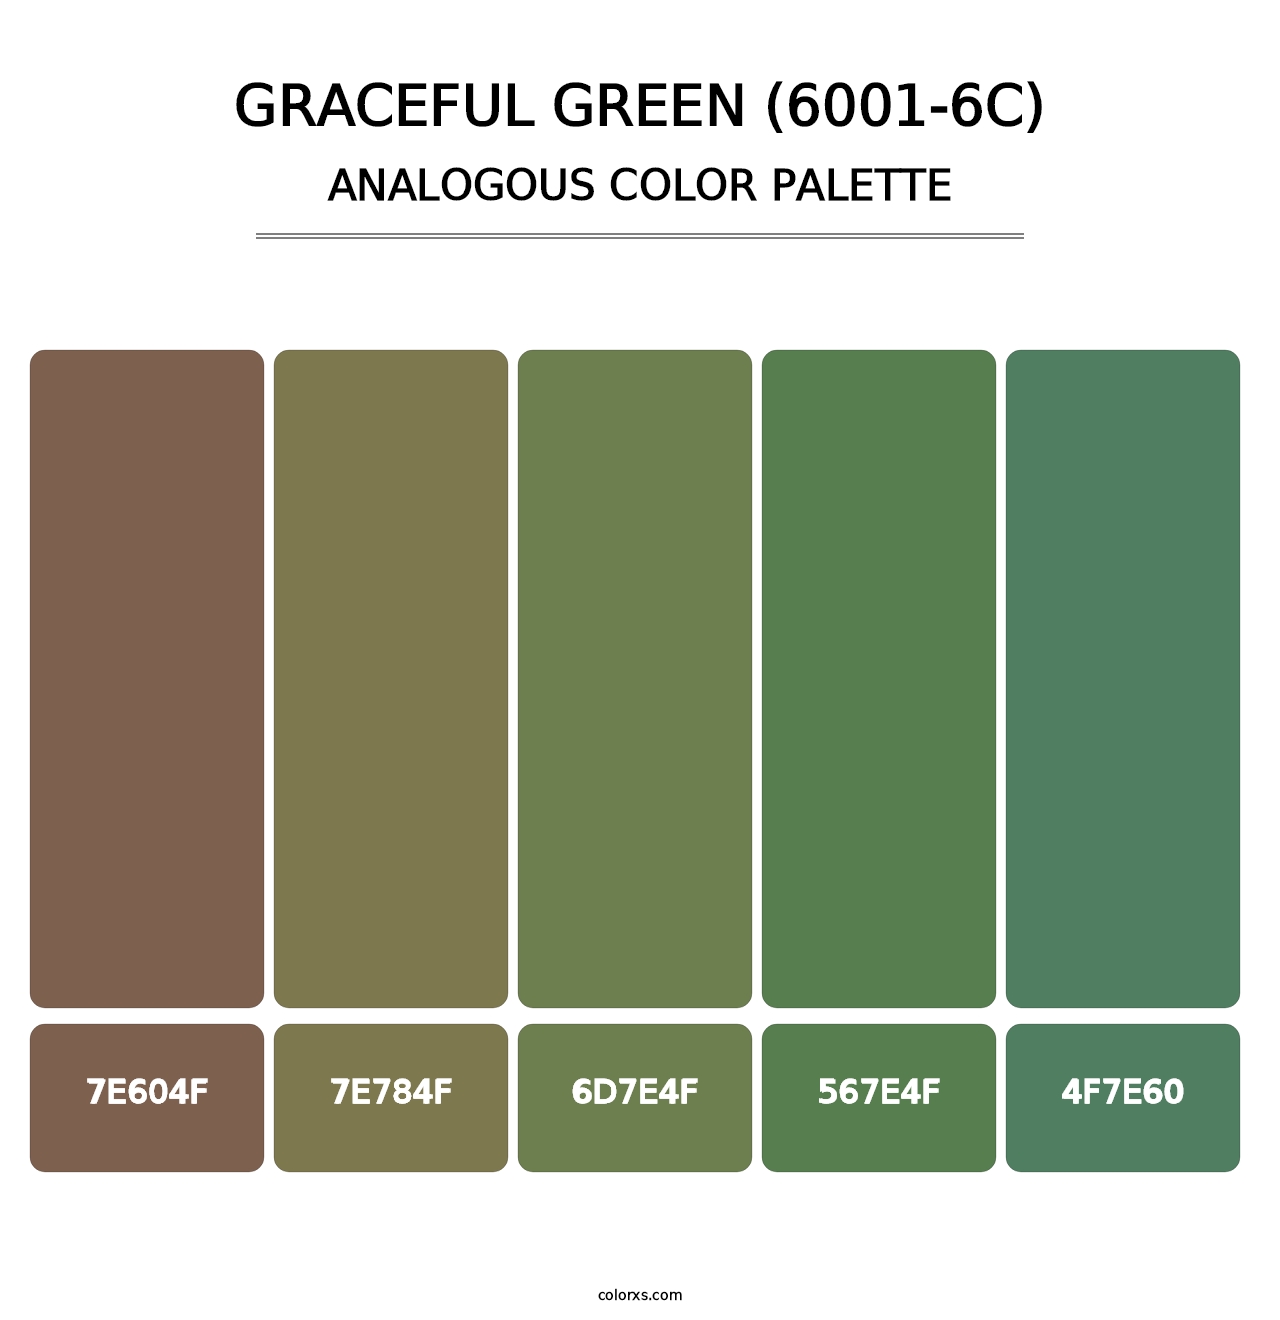 Graceful Green (6001-6C) - Analogous Color Palette